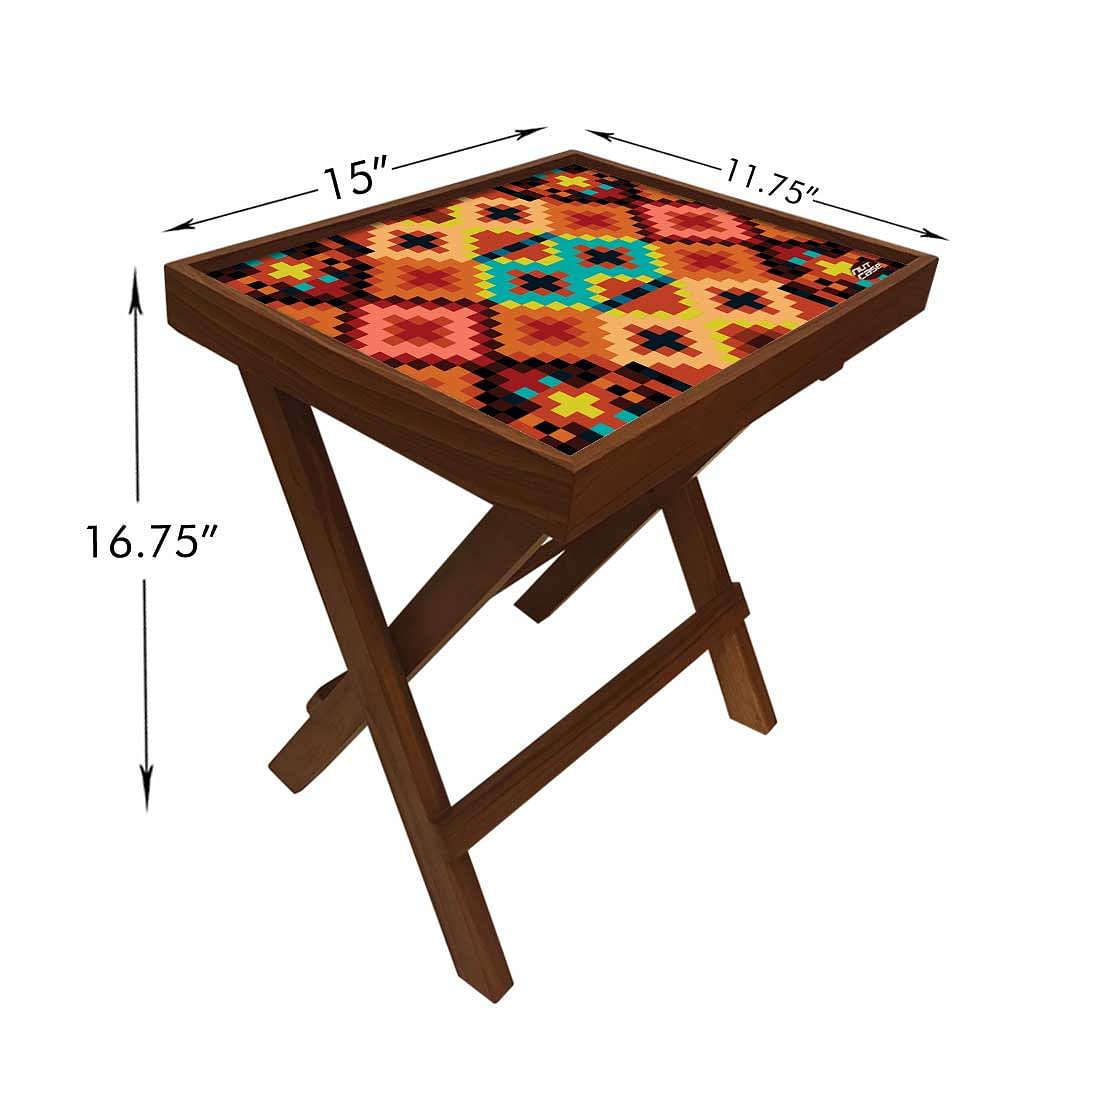 Folding Side Table - Teak Wood - Diamond Designs Nutcase